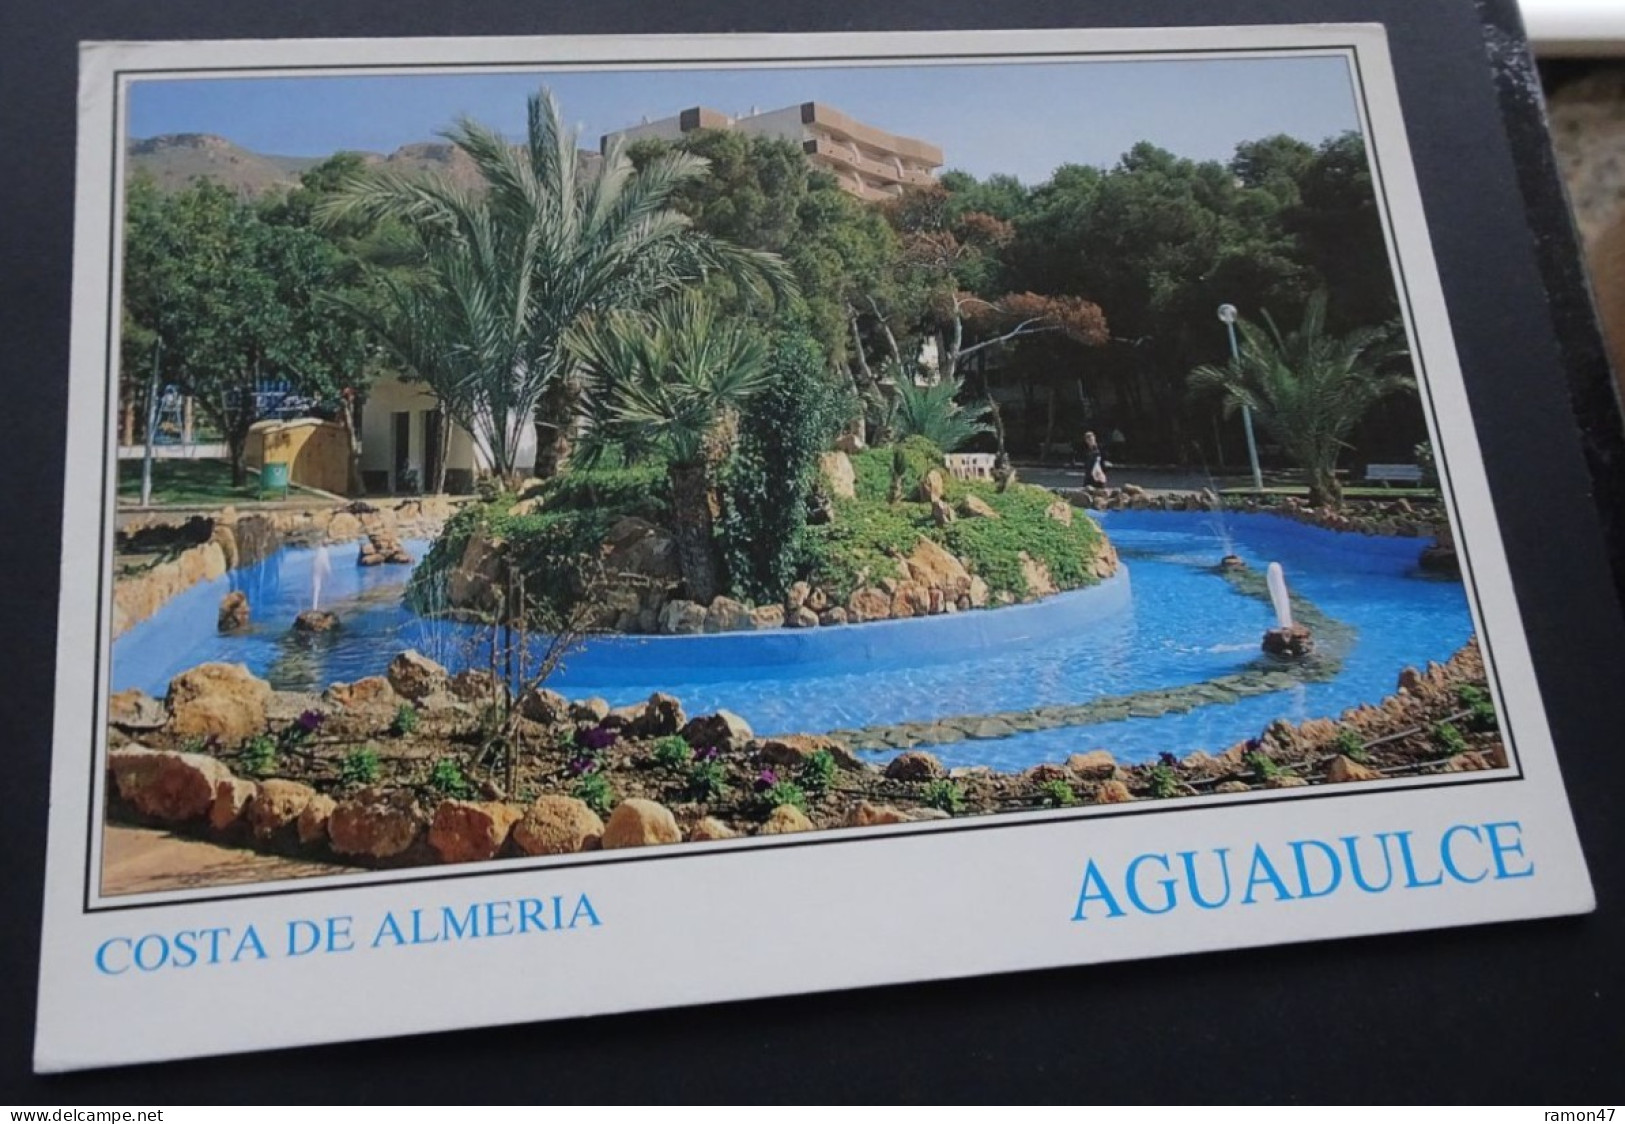 Aguadulce, Costa De Almeria - Parque - Tintore Ediciones, Malaga - Fotografia Emilio Tintoré - # 1.465 - Almería